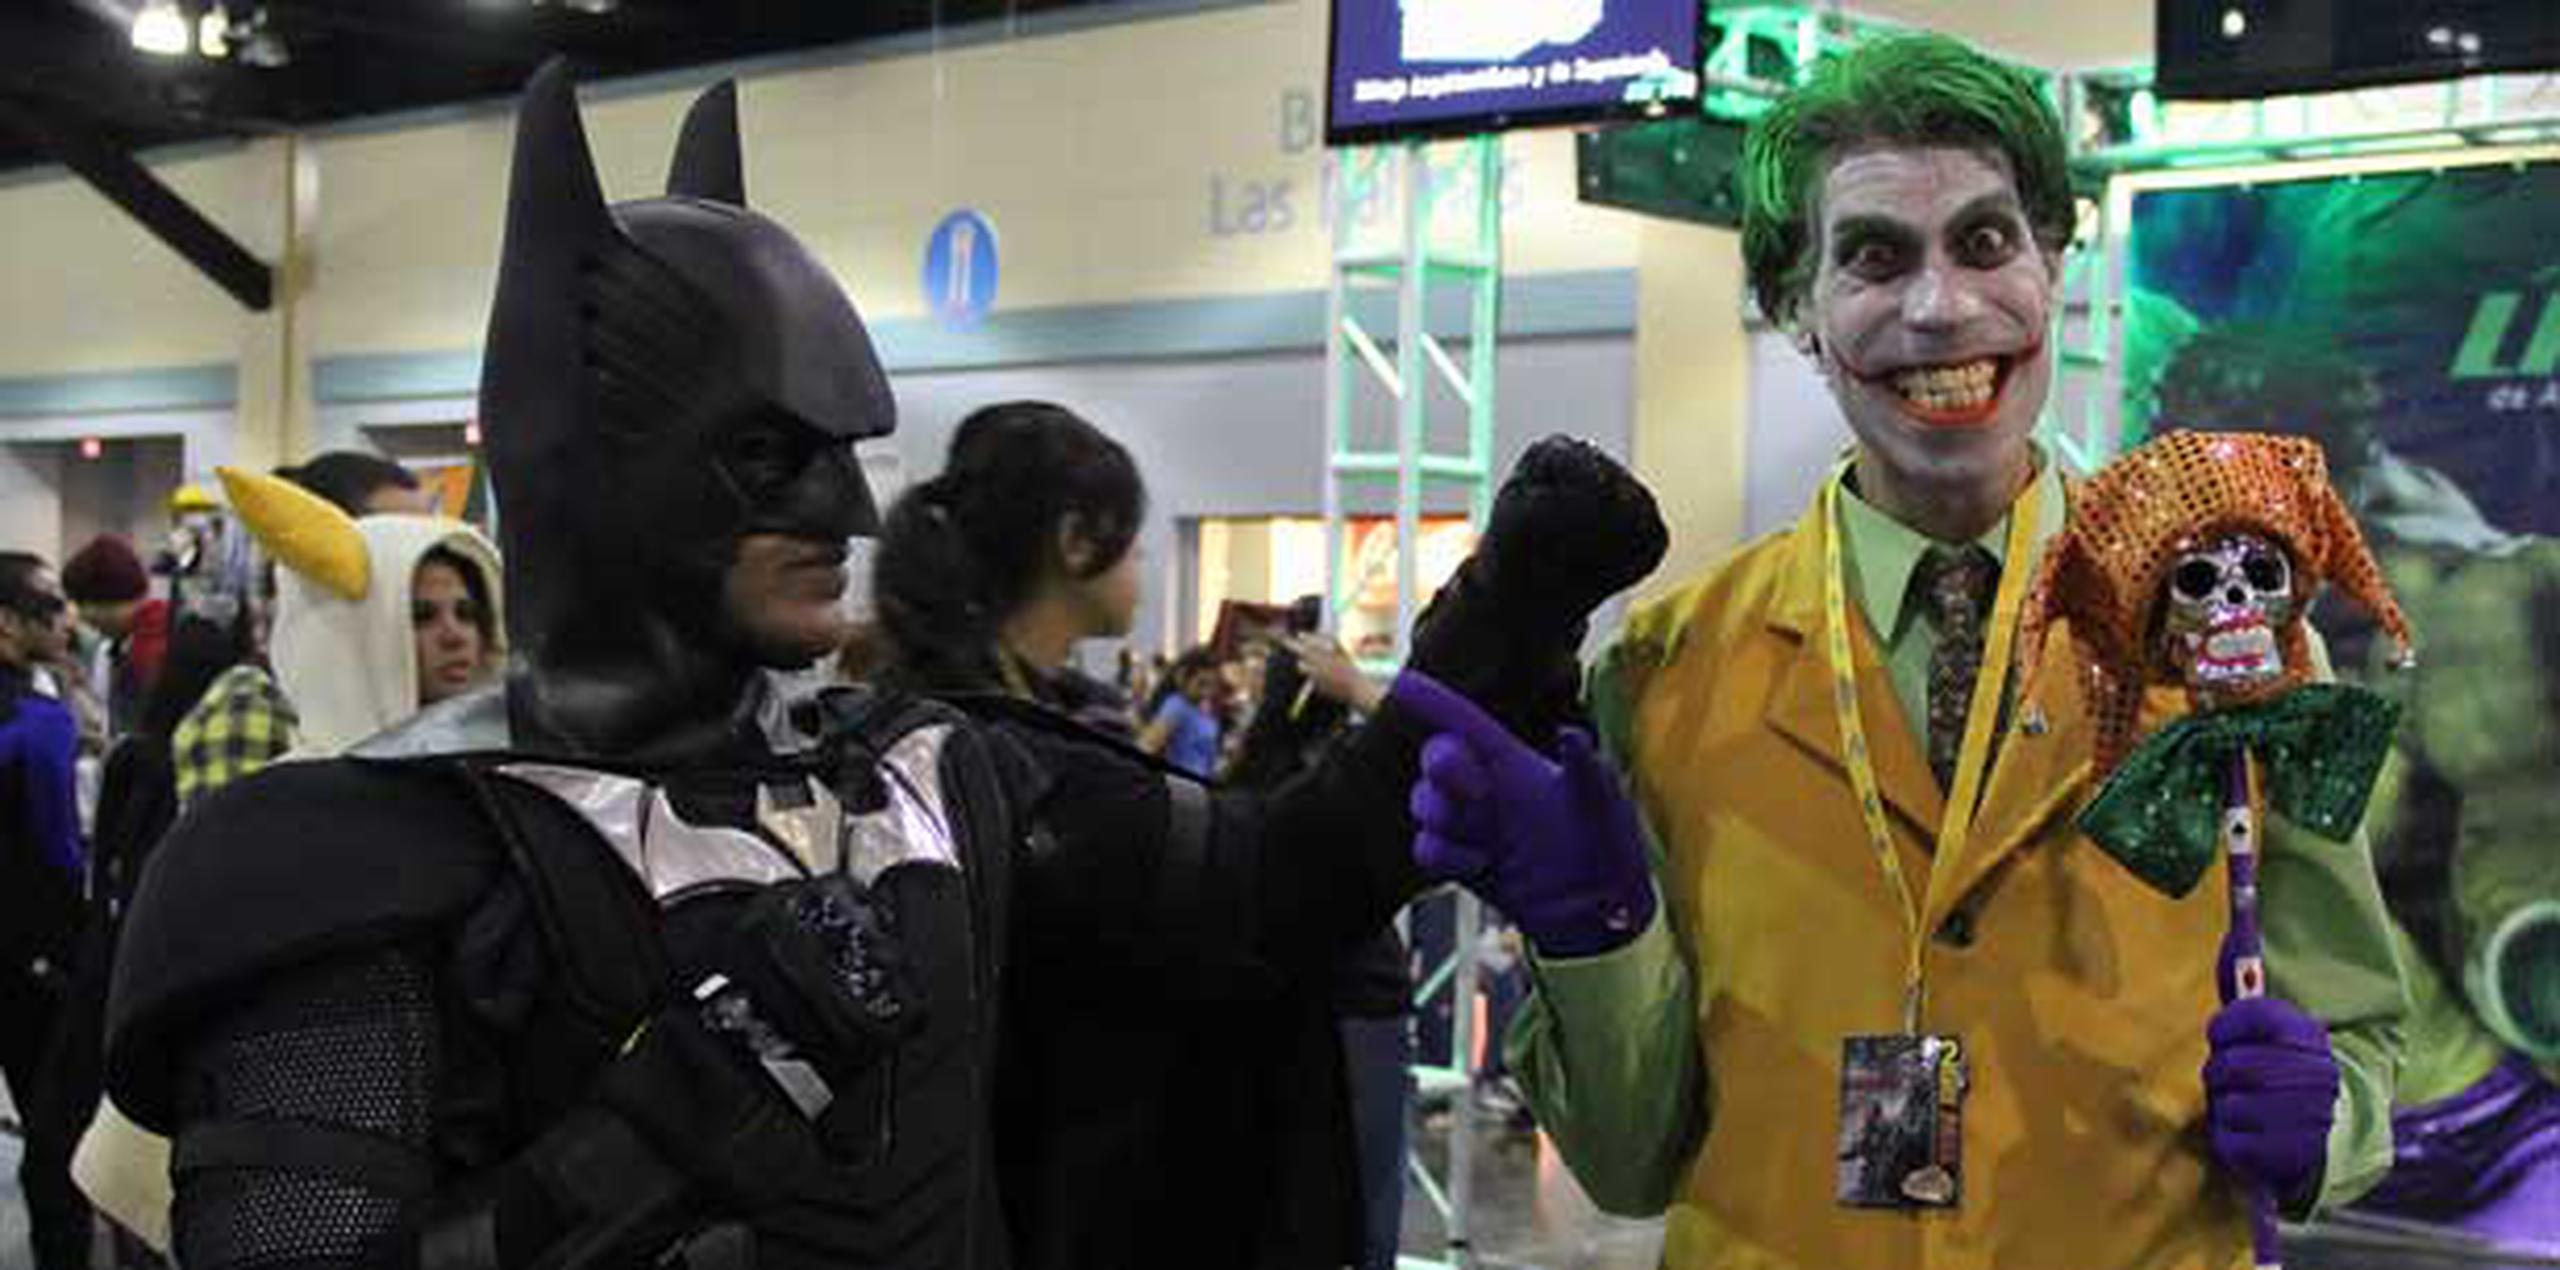 En este evento hasta "Batman" y "el Joker" se llevan bien. (Suministrada)